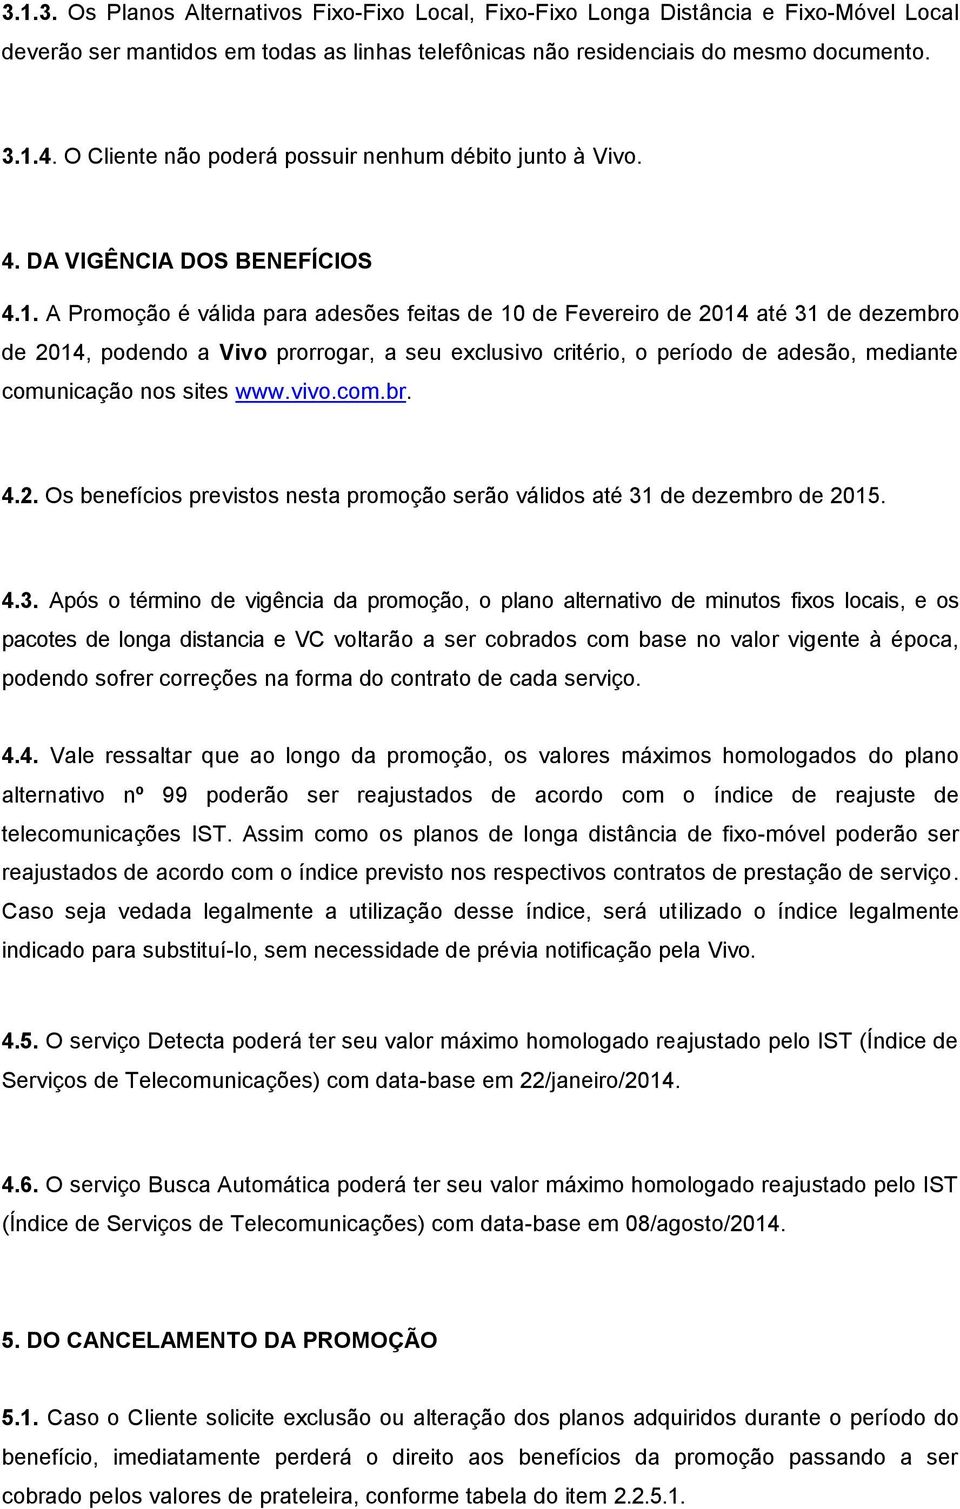 A Promoção é válida para adesões feitas de 10 de Fevereiro de 2014 até 31 de dezembro de 2014, podendo a Vivo prorrogar, a seu exclusivo critério, o período de adesão, mediante comunicação nos sites